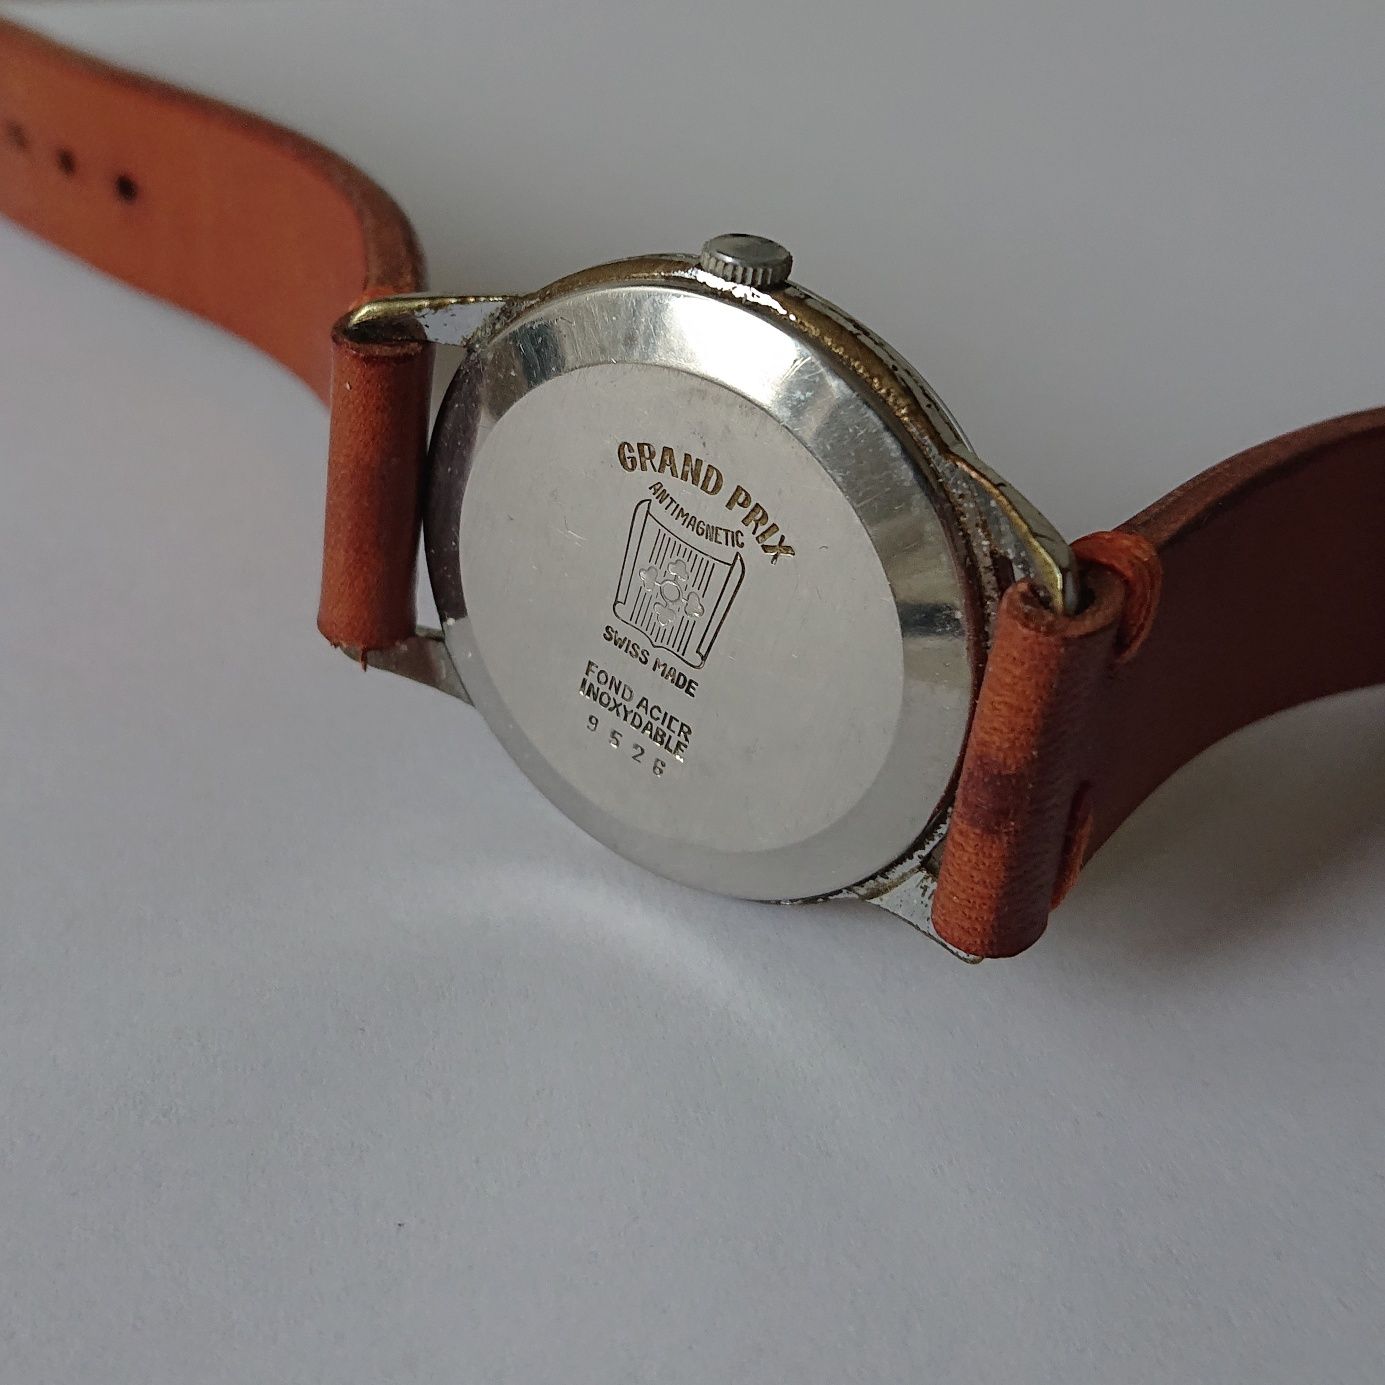 Cortebert Antimagnetic zegarek naręczny mechaniczny kolekcjonerski